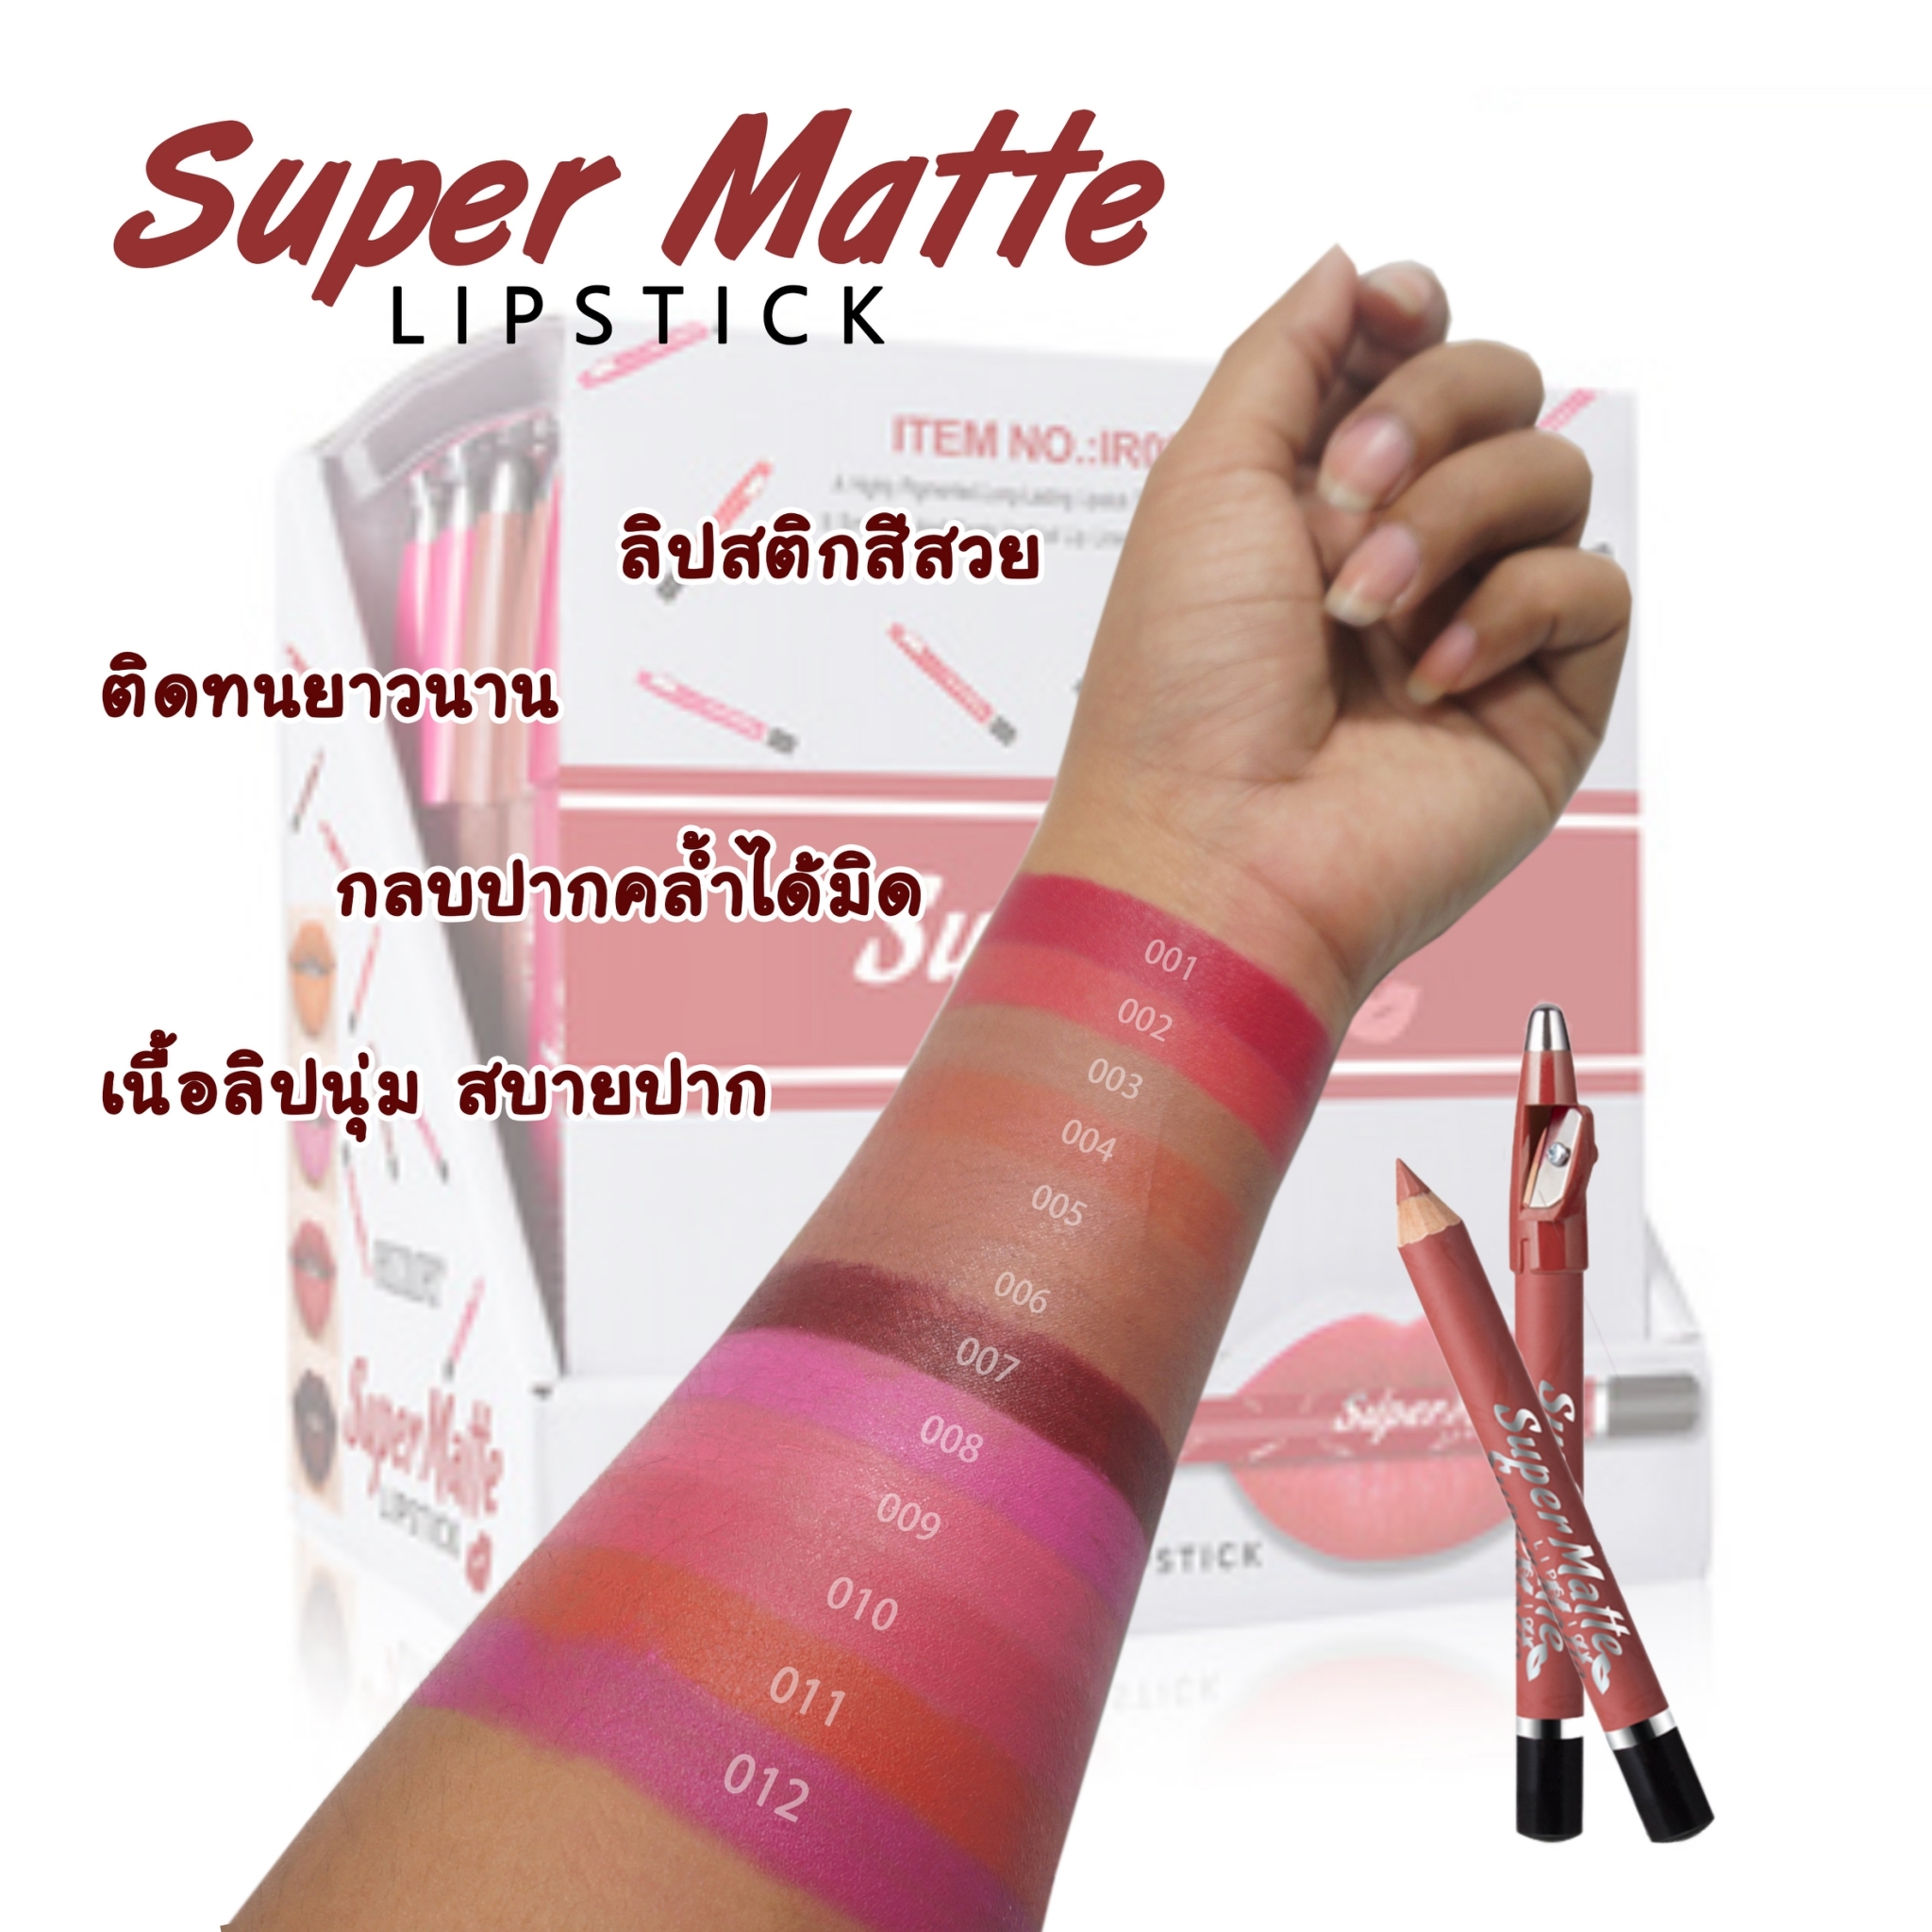 9.-ลิปเนื้อแมท มาพร้อมกบเหลา Super matte lipstick  MENOW  ใช้ดี เขียนง่าย สบายปาก ฮิตมาก ลิปจุ๊ปไม่หลุด